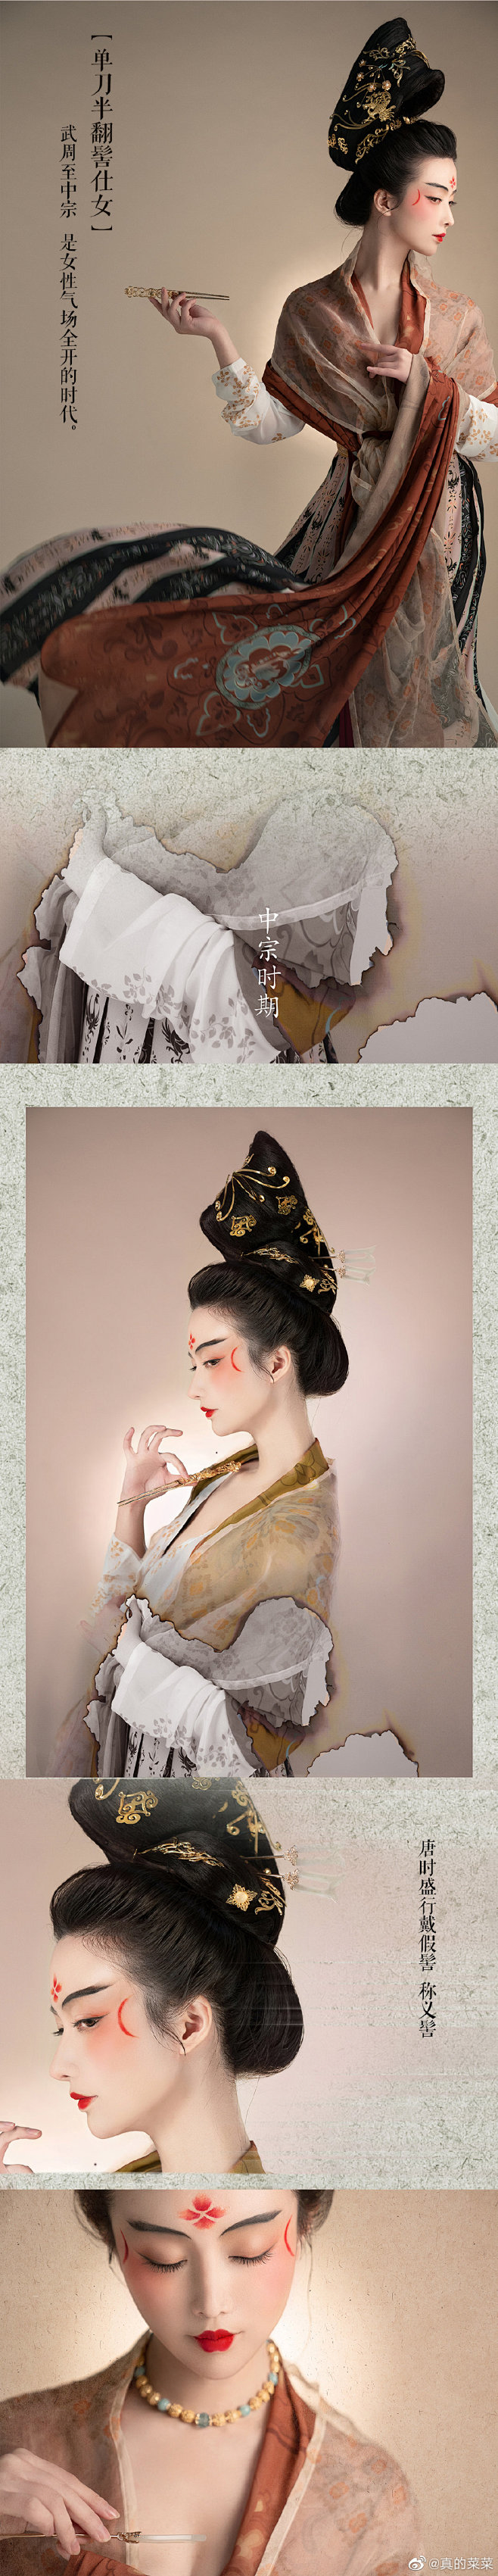 服装参考中国古代服饰古装